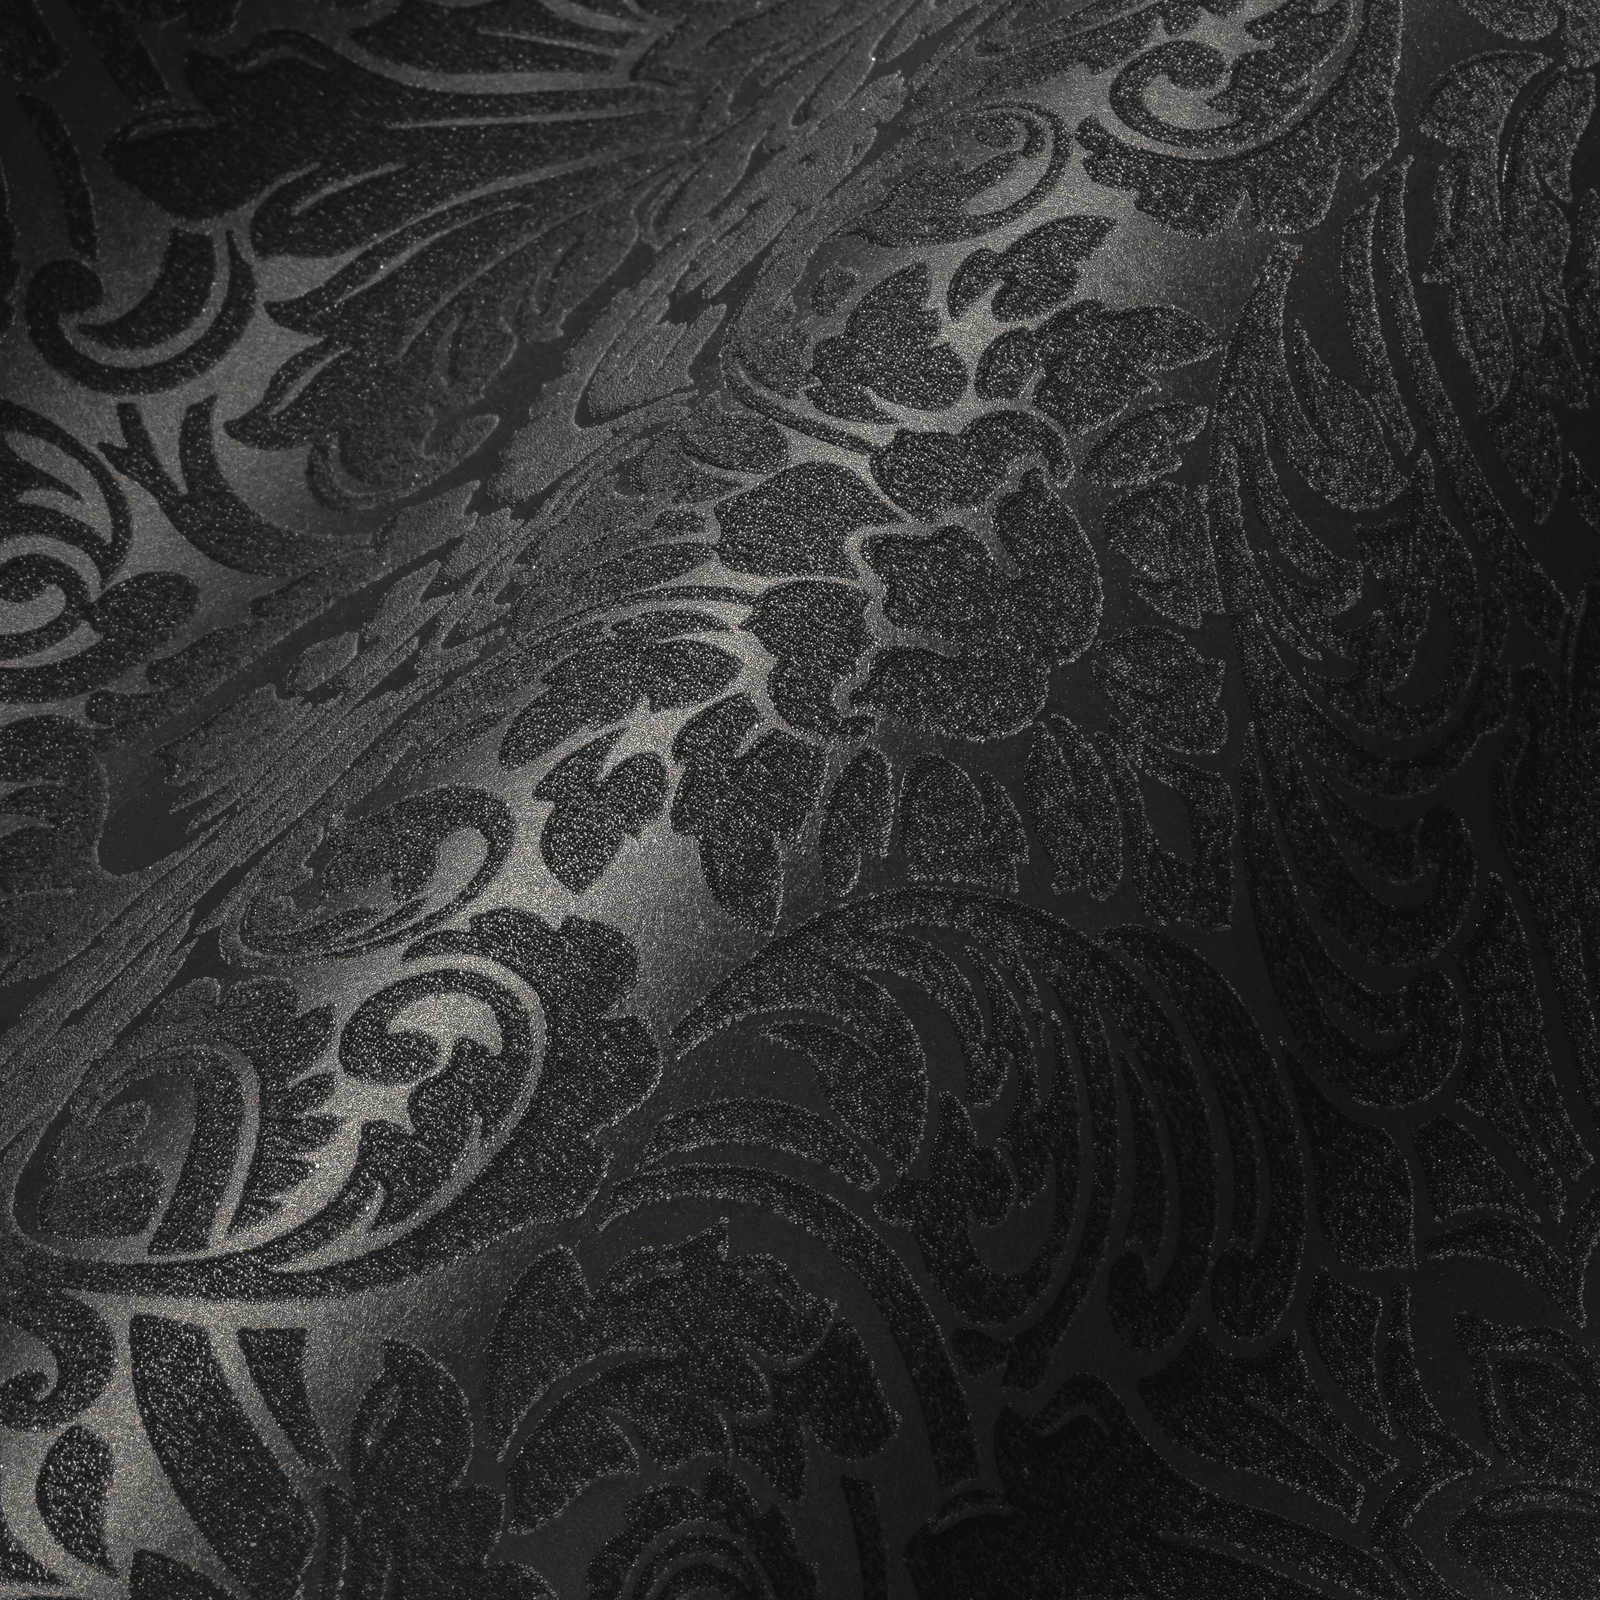             Ornamenteel behang met metallic effect & bloemmotief - zilver, zwart
        